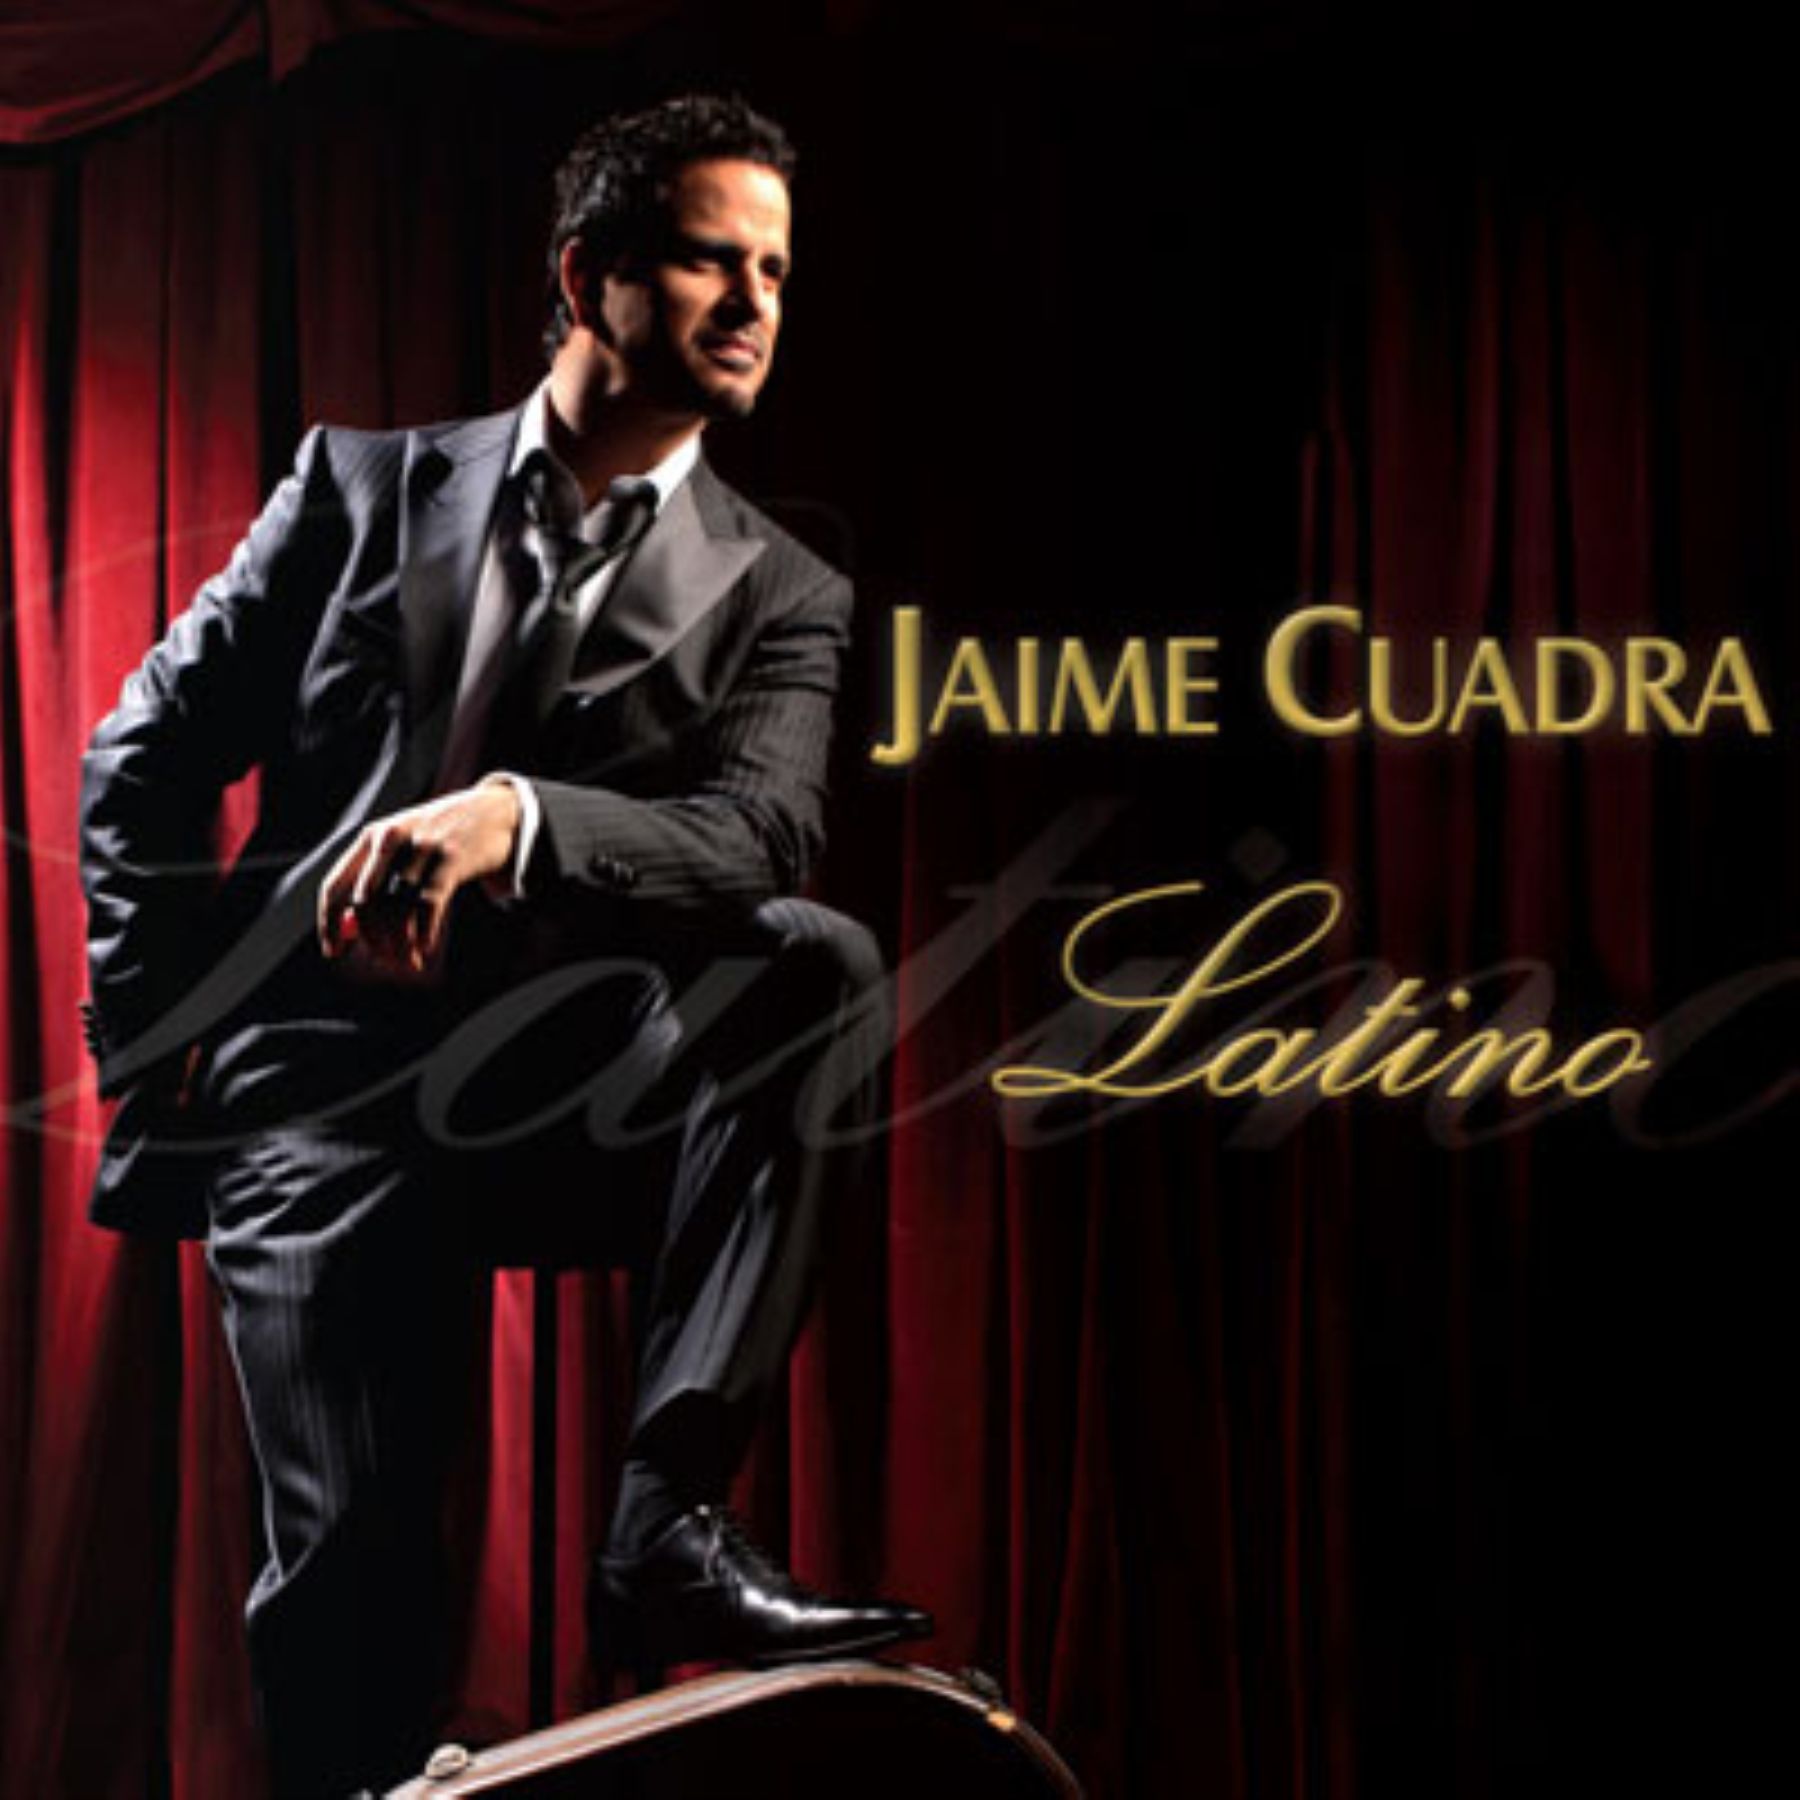 Jaime Cuadra con su disco Latino y película La teta asustada, los más vendidos de 2010.